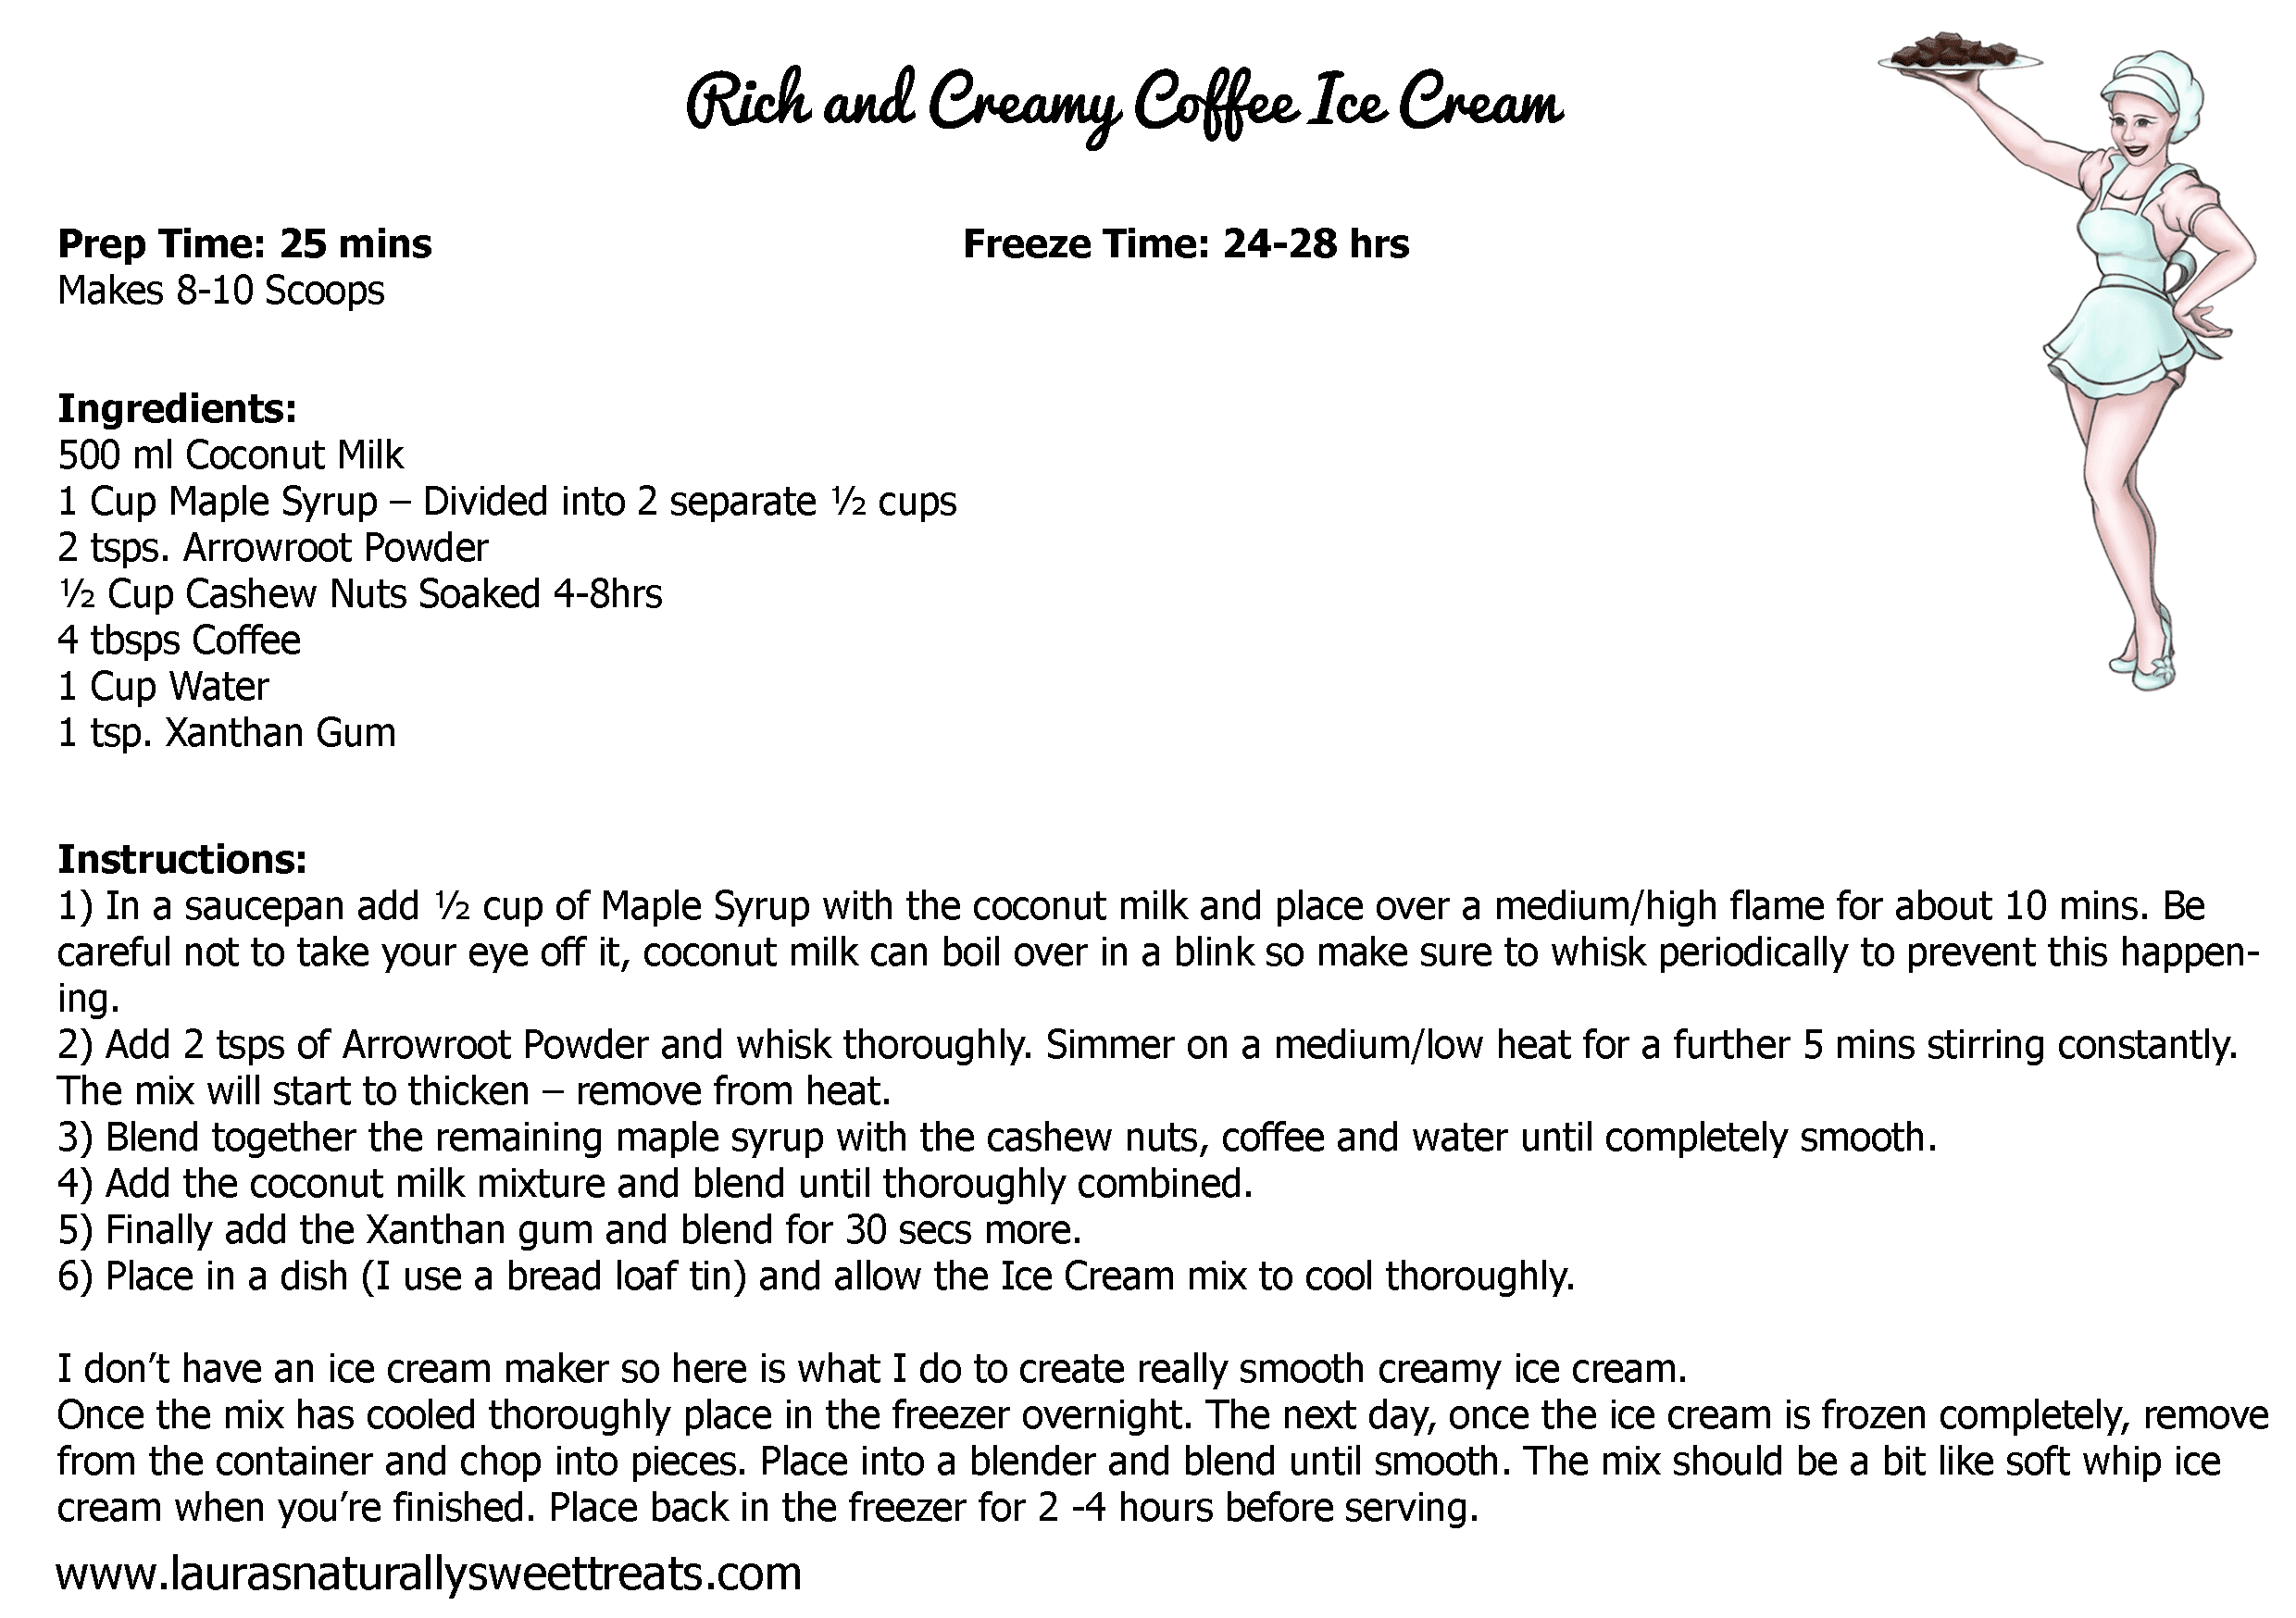 rich-and-creamy-coffee-ice-cream-recipe-card